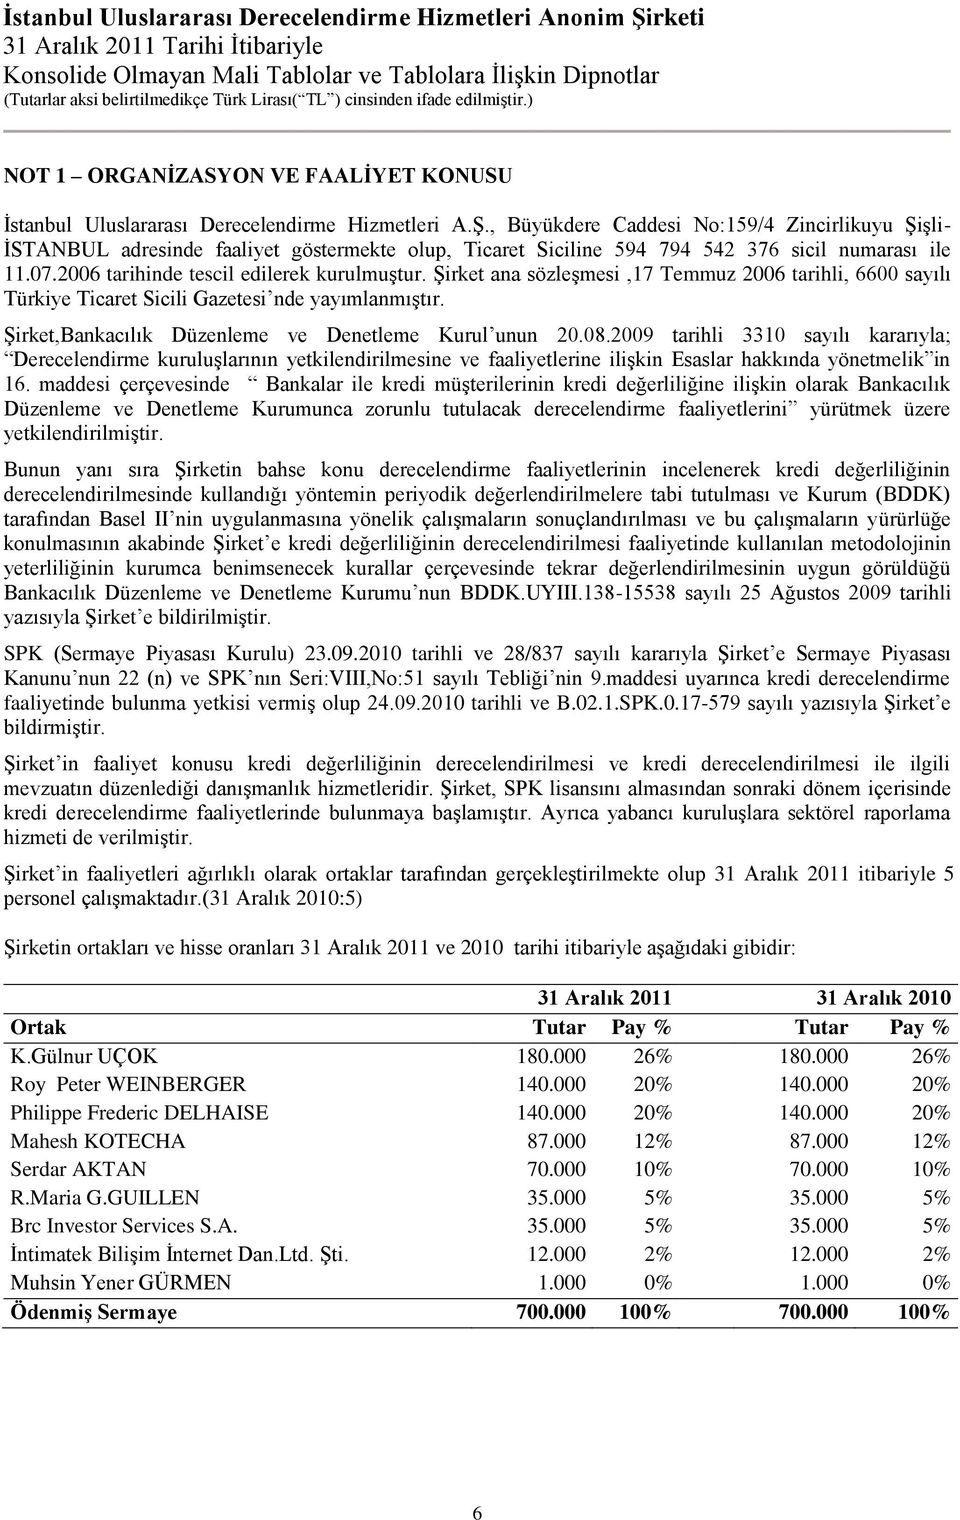 Şirket ana sözleşmesi,17 Temmuz 2006 tarihli, 6600 sayılı Türkiye Ticaret Sicili Gazetesi nde yayımlanmıştır. Şirket,Bankacılık Düzenleme ve Denetleme Kurul unun 20.08.